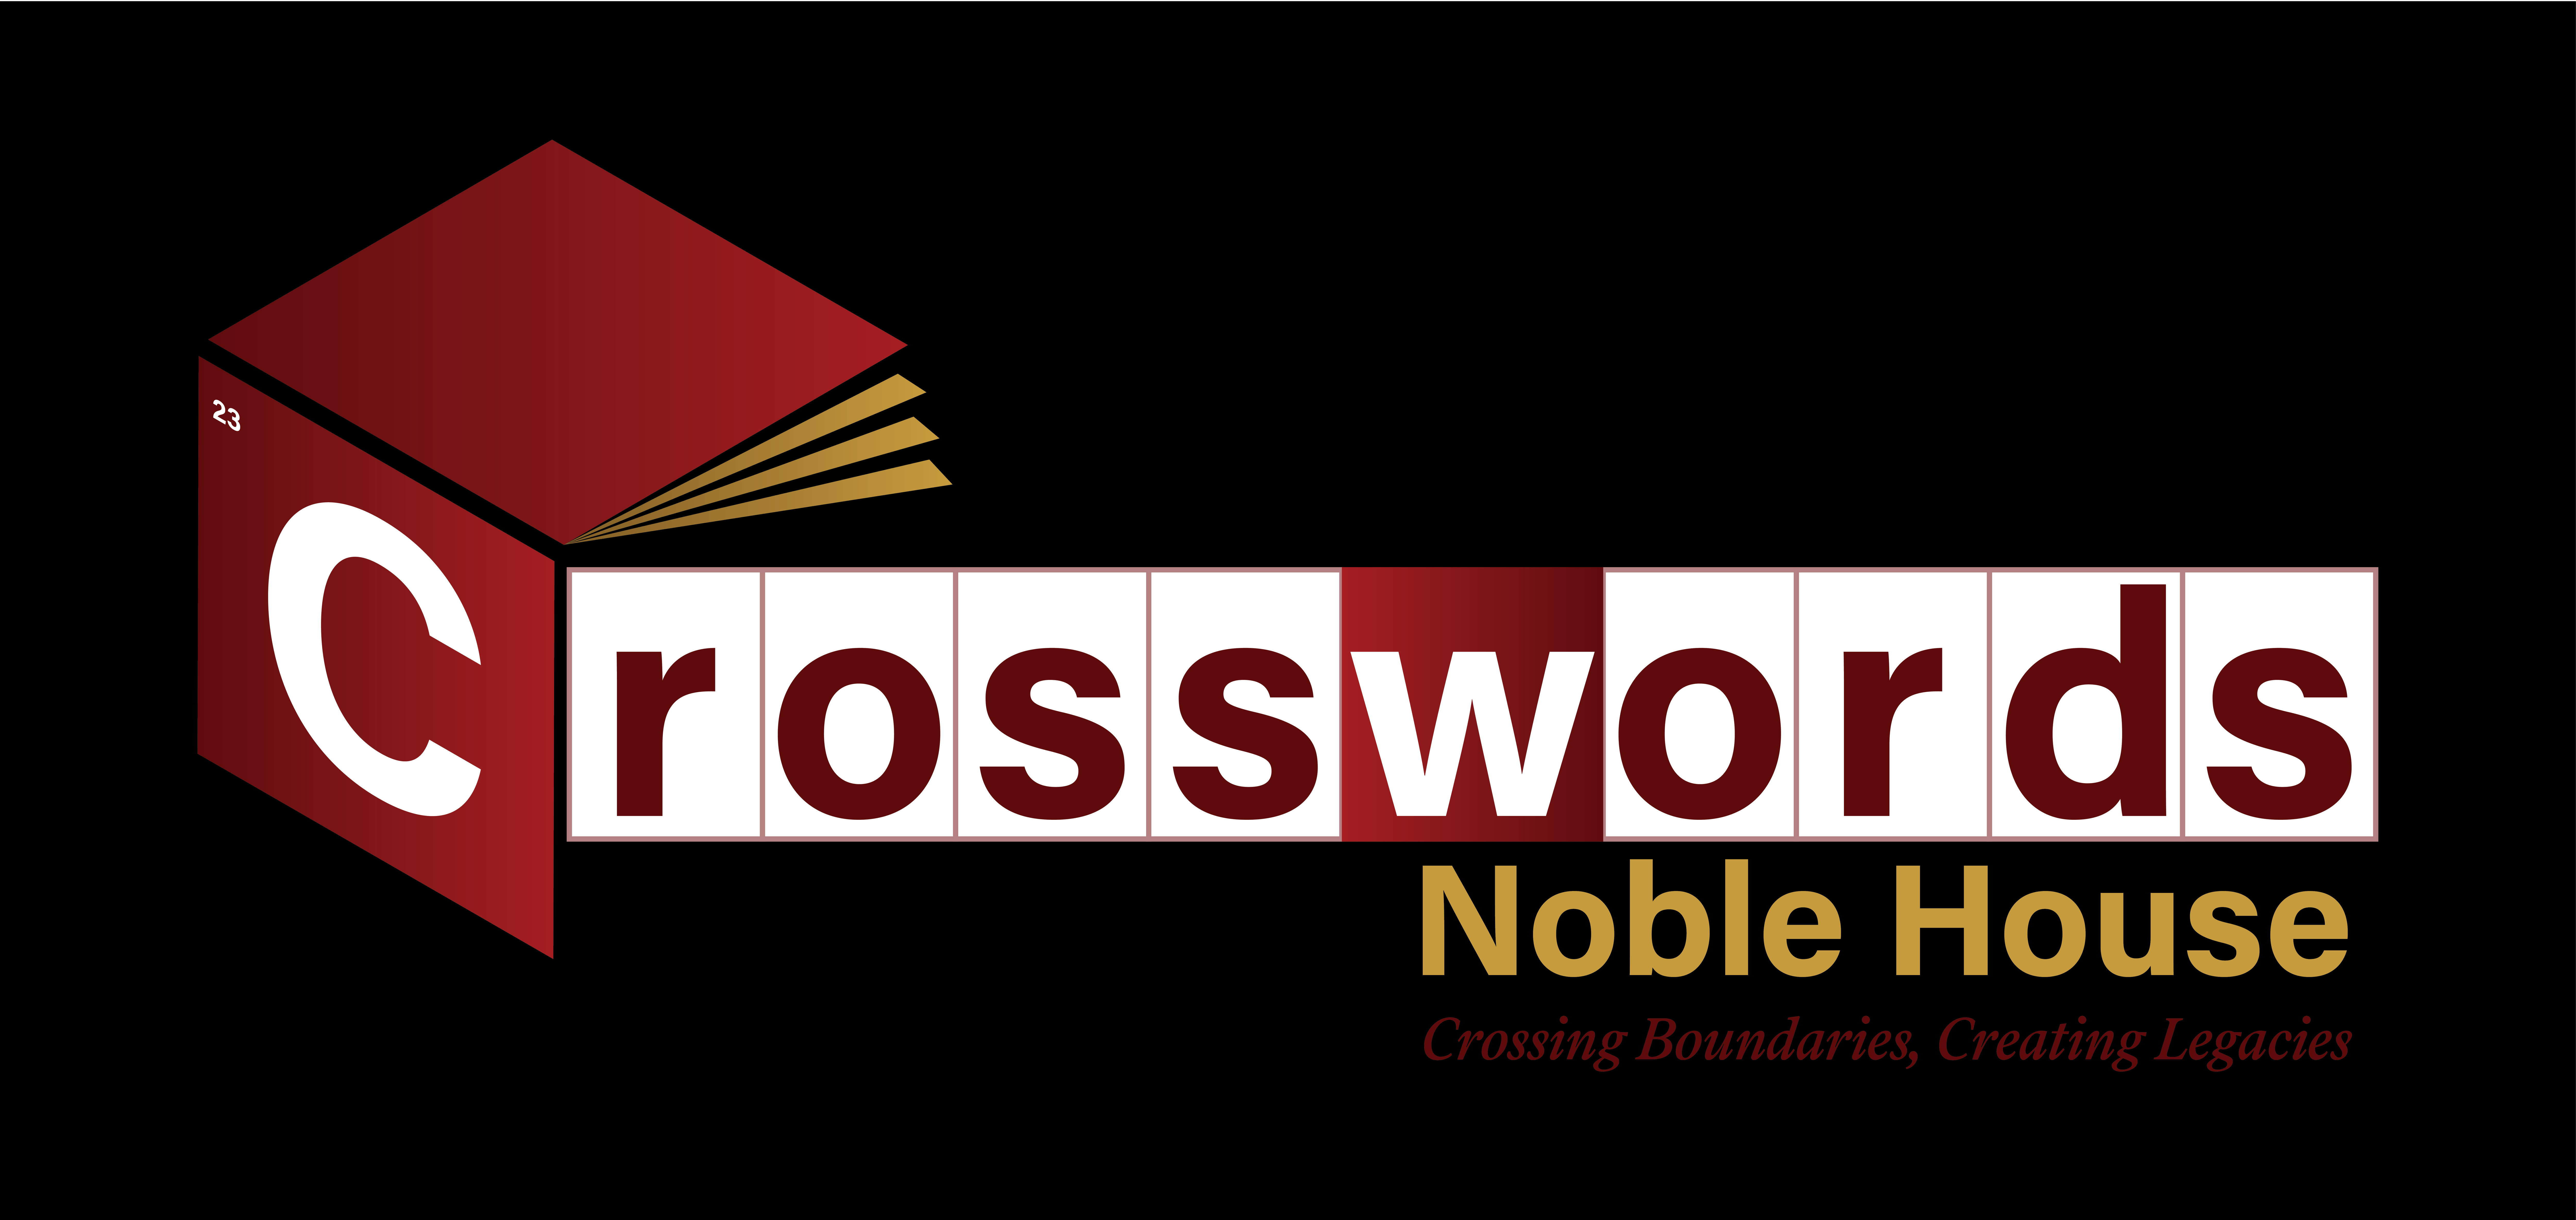 Crosswords Noble House Logo 15834 x 7501 - Black BG